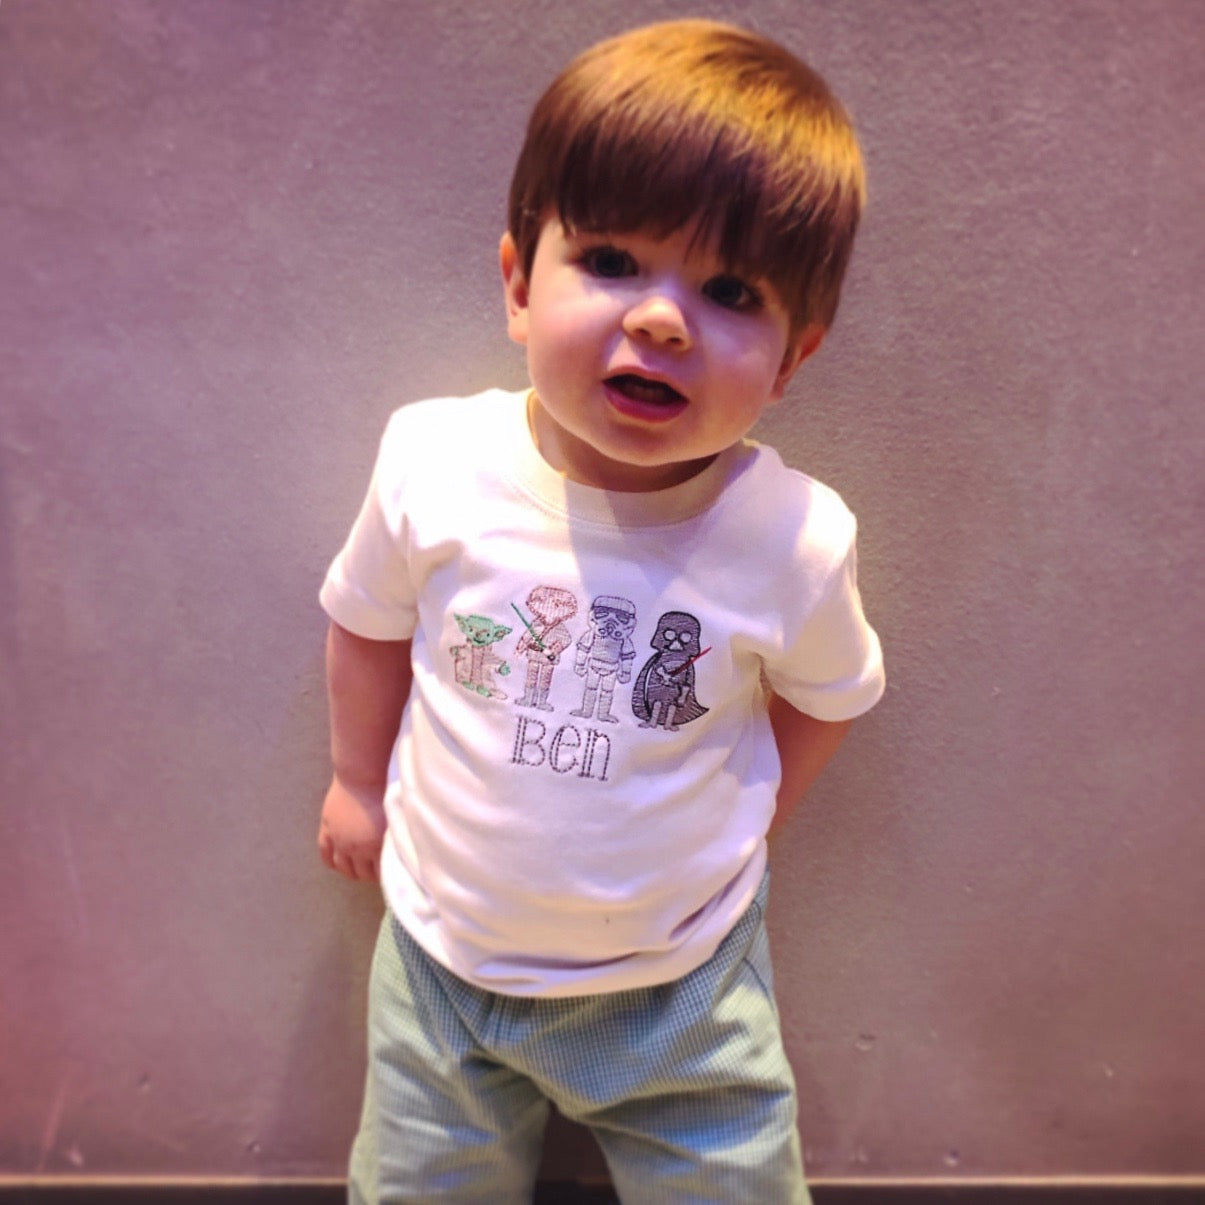 The Force Little Boy T-Shirt